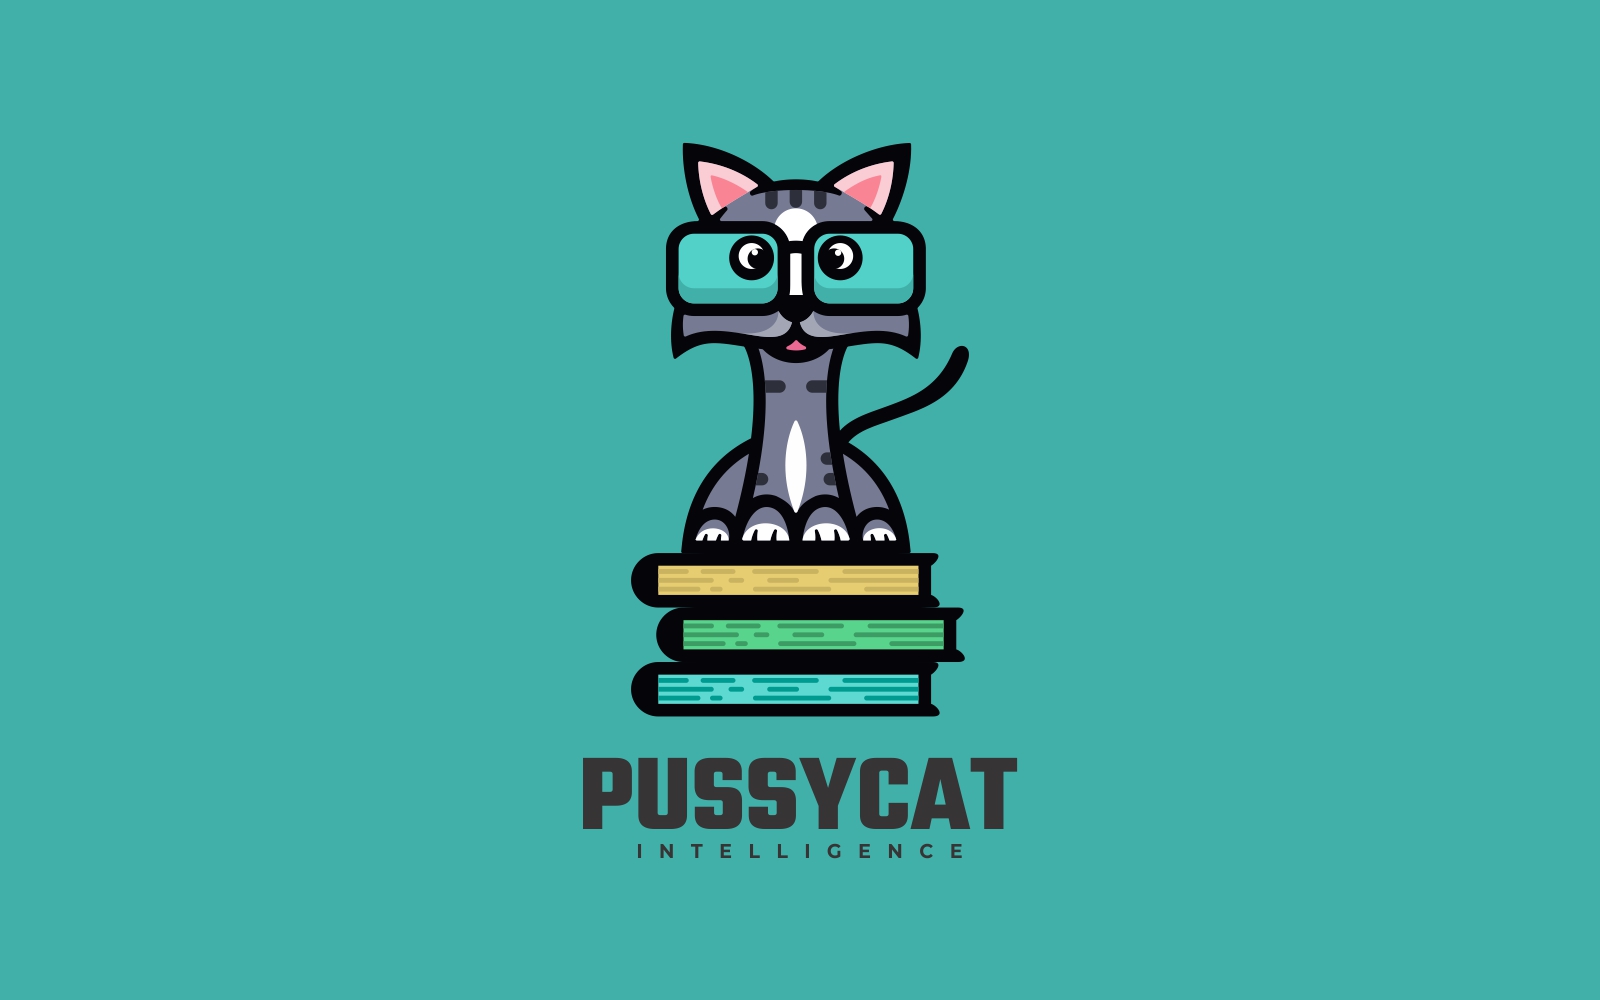 Cat Mascot Cartoon Logo Template